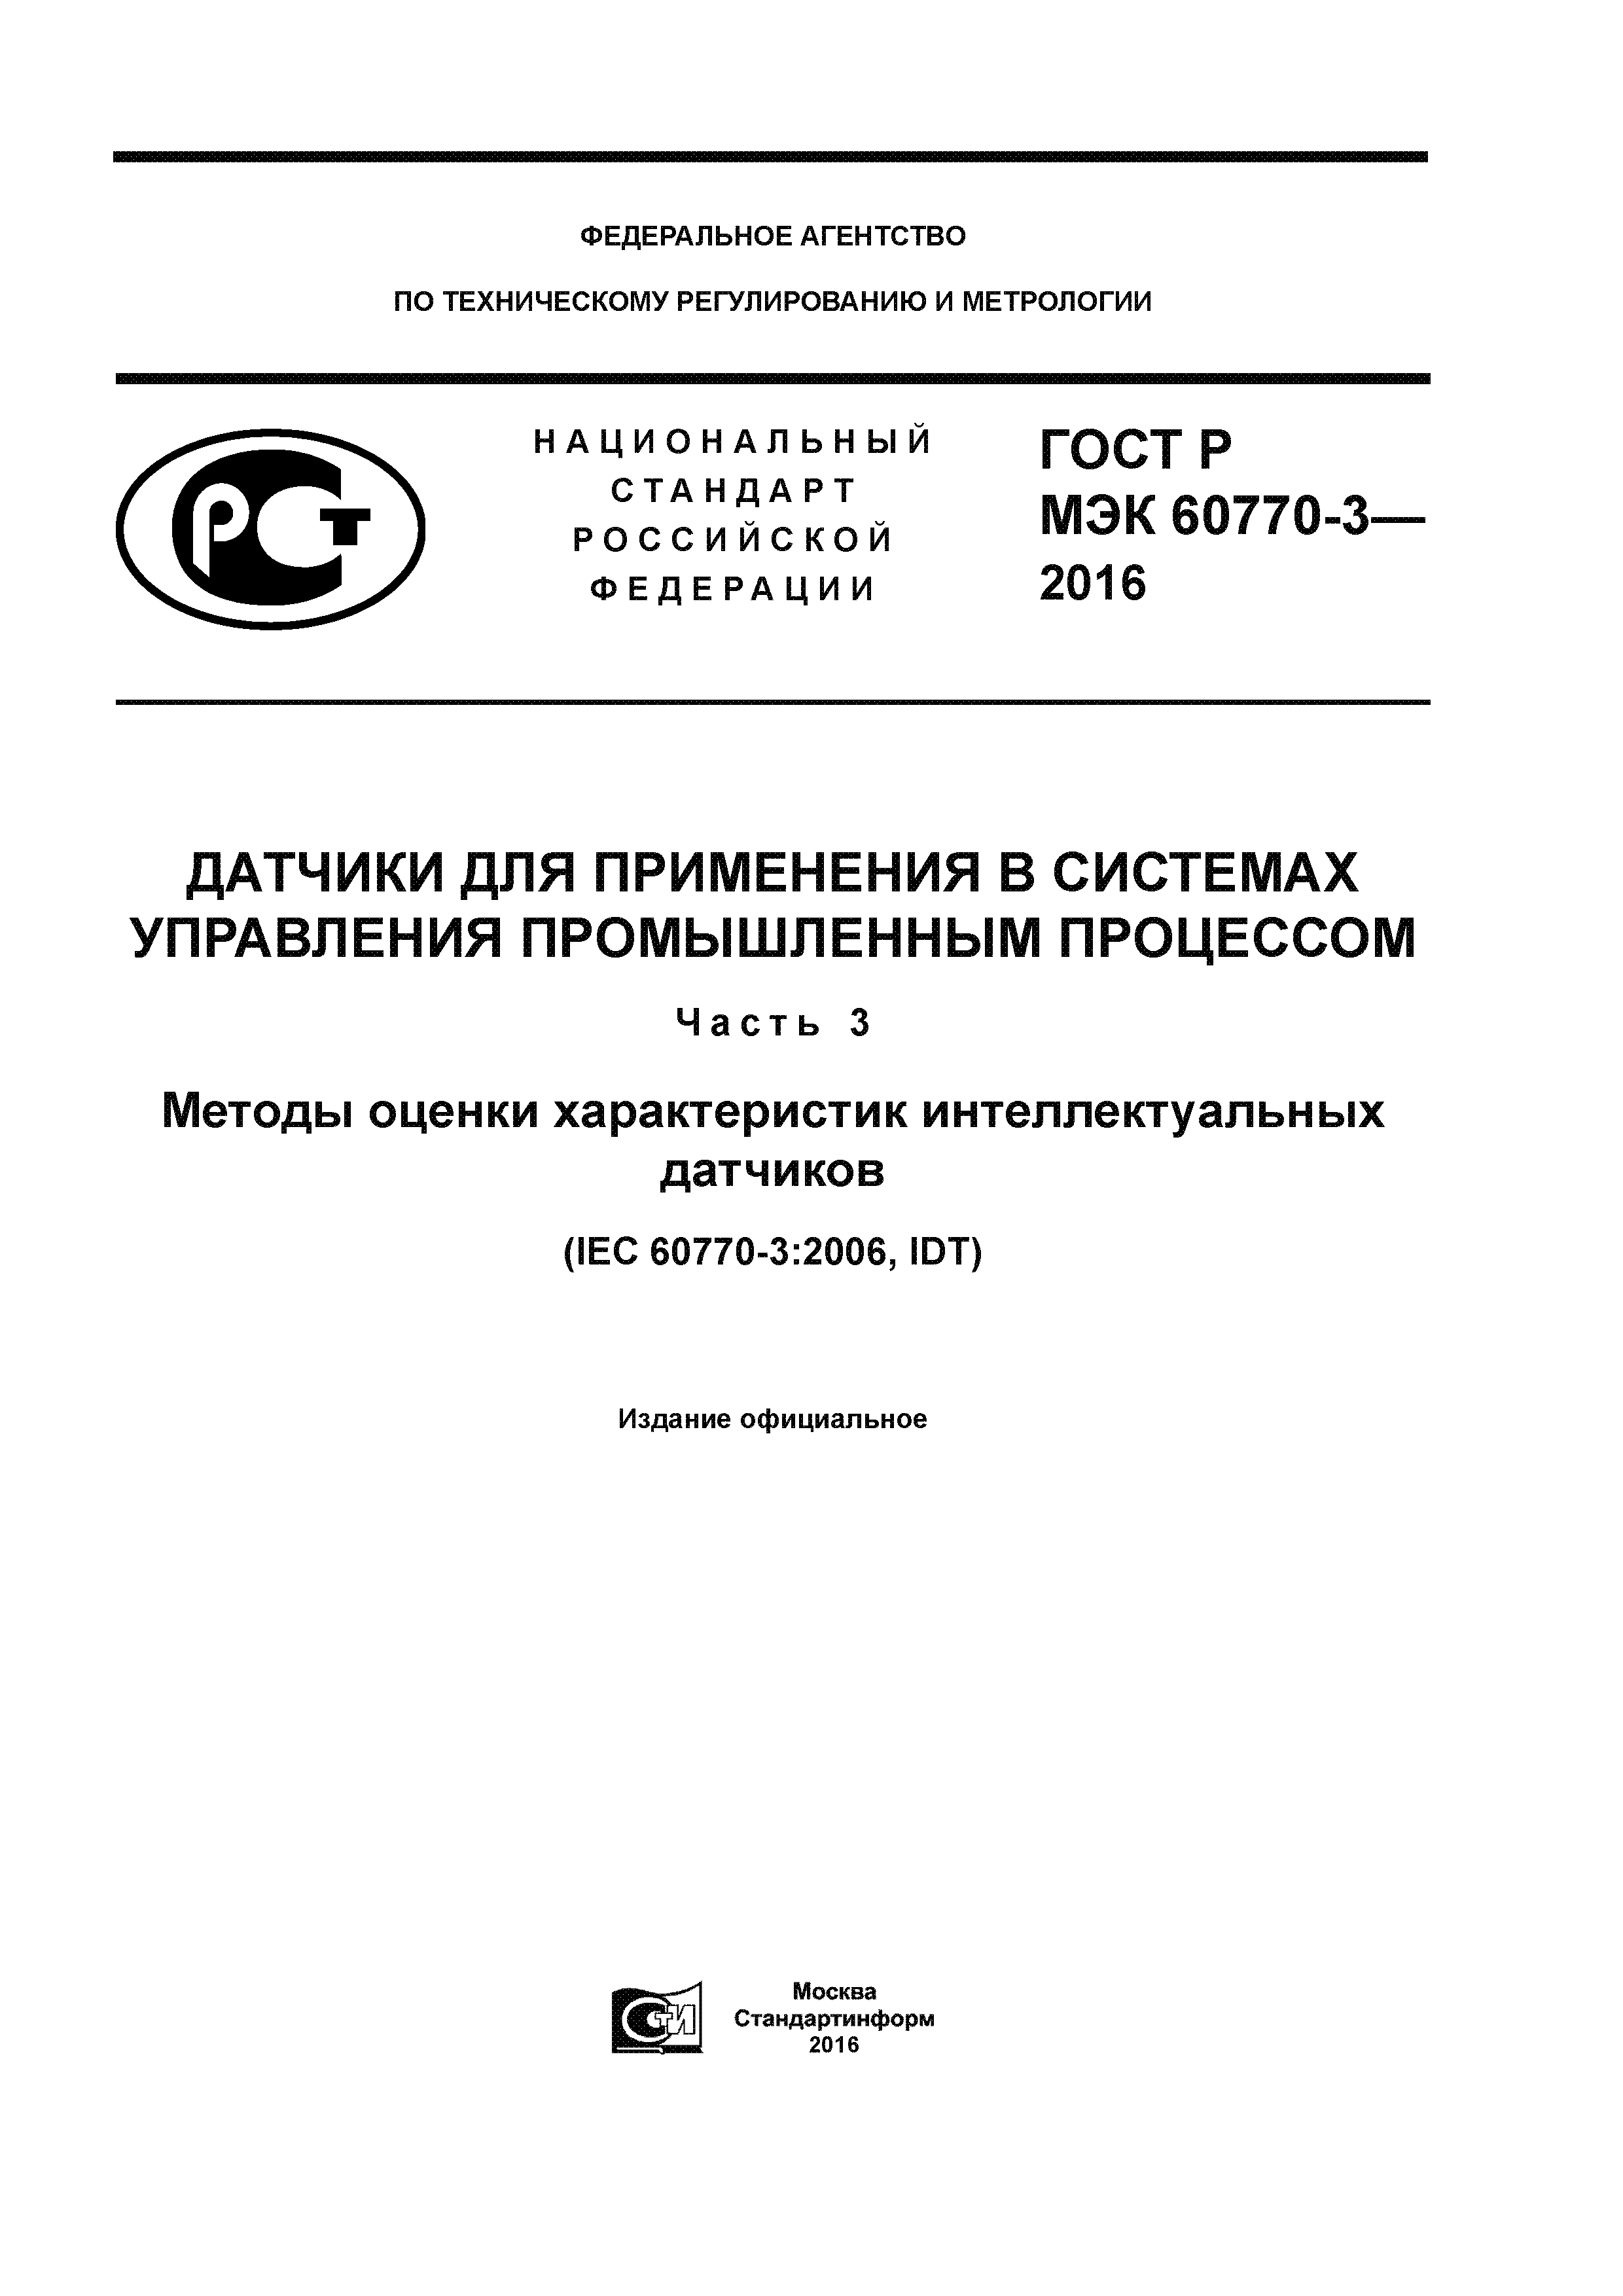 ГОСТ Р МЭК 60770-3-2016